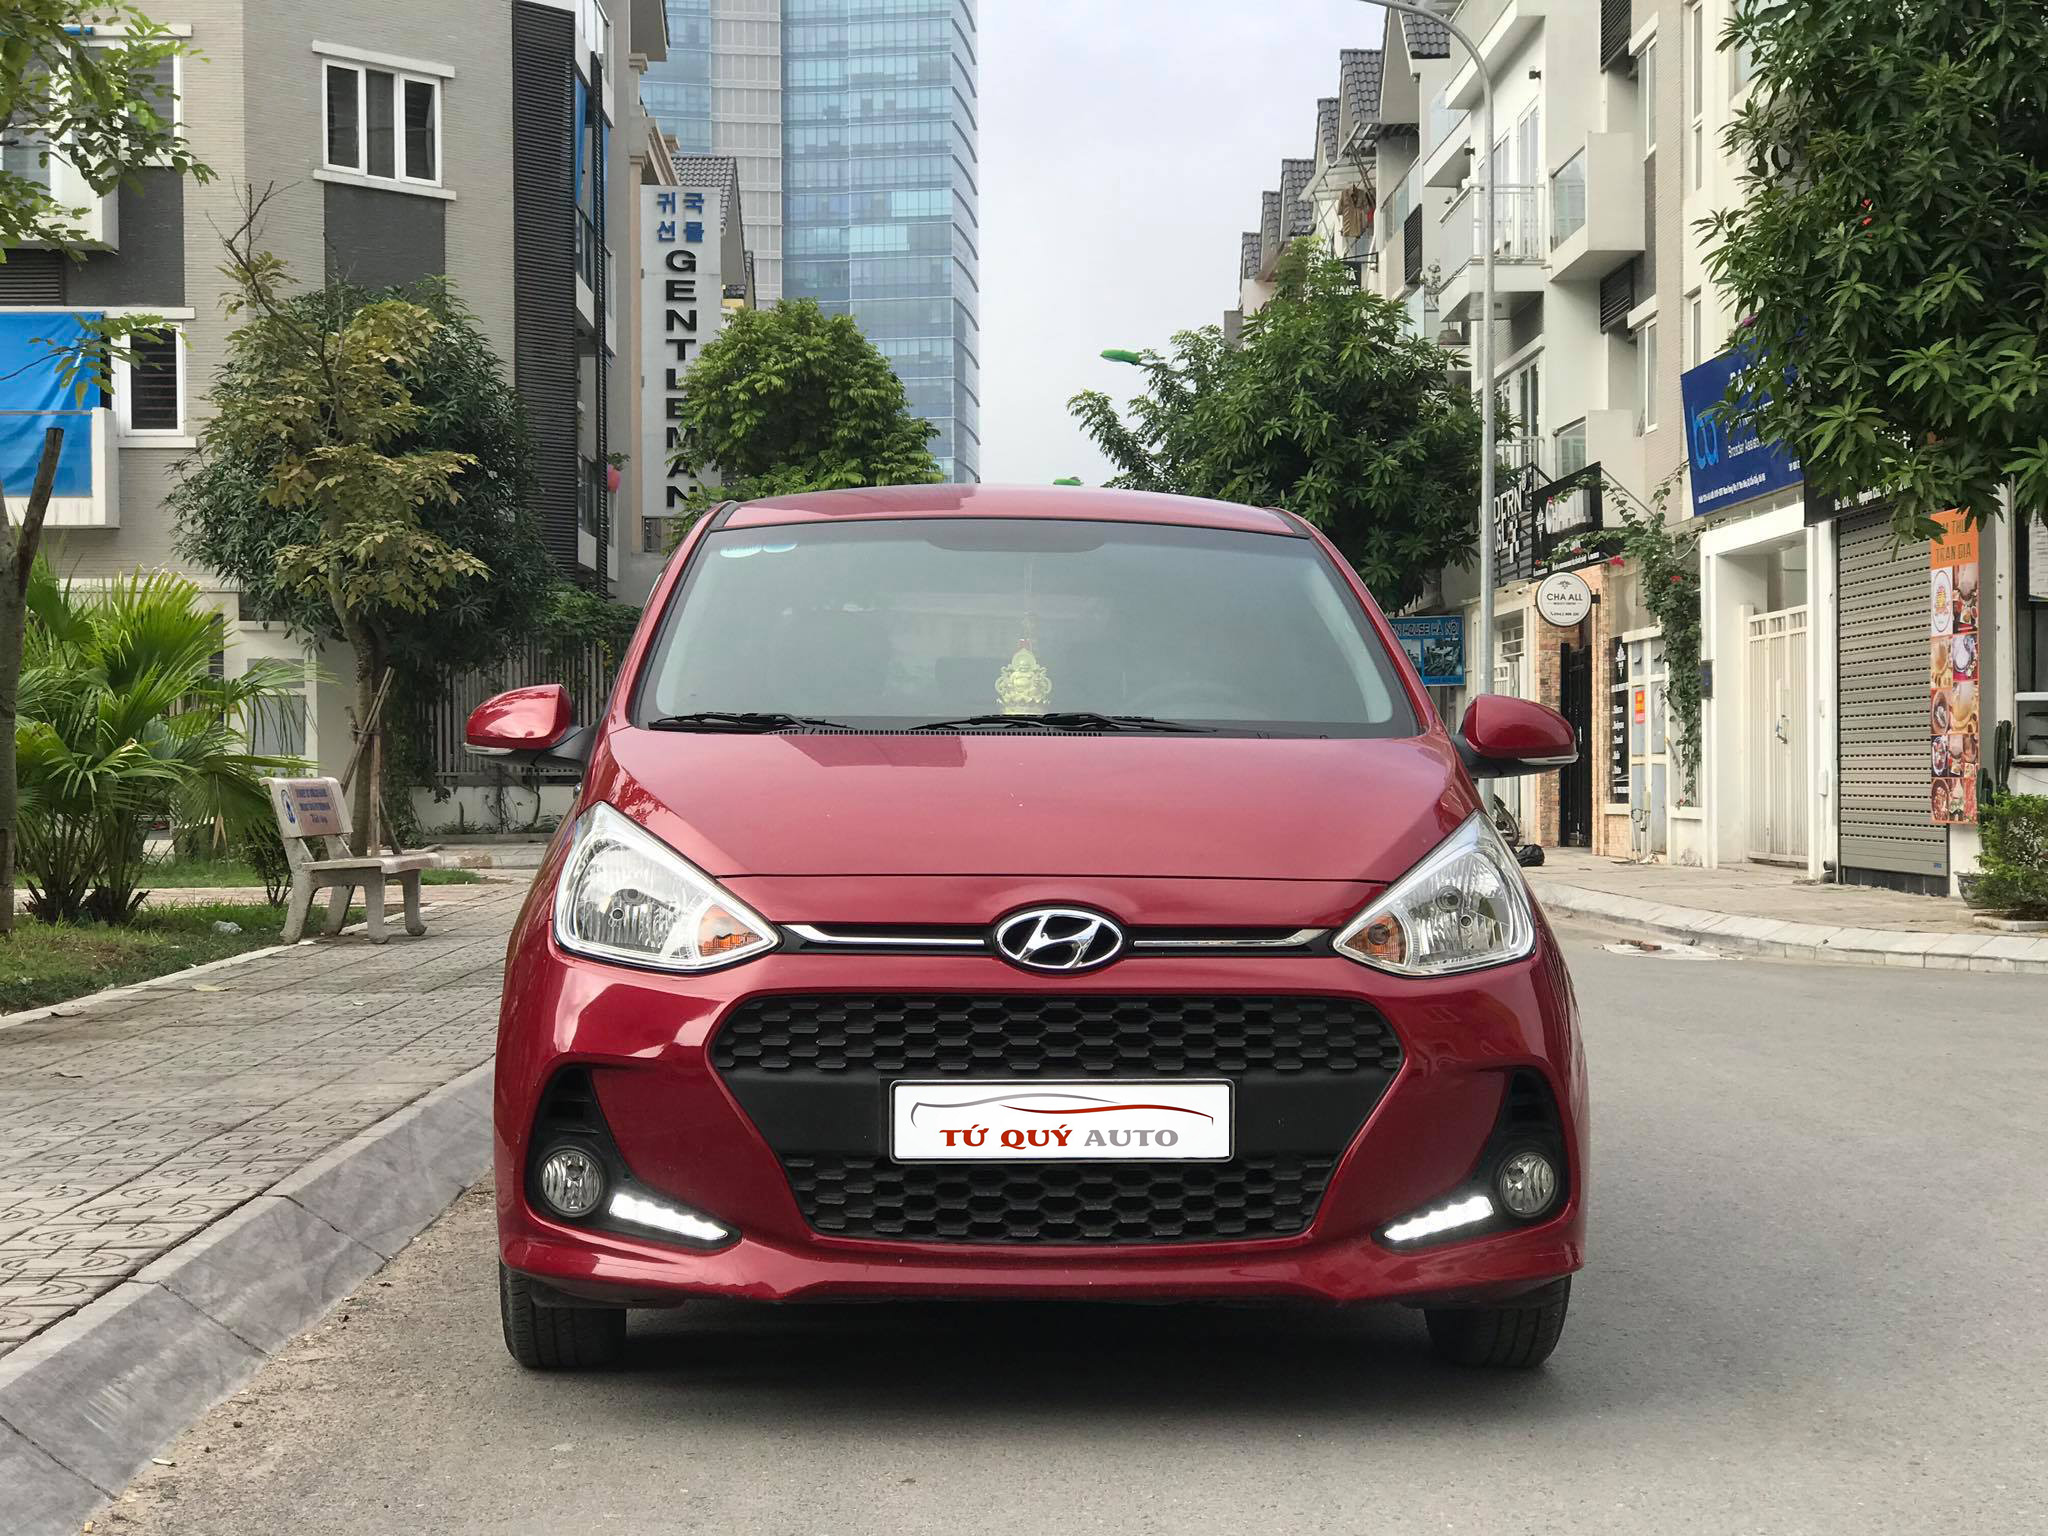 Giới thiệu chung về xe Hyundai Grand i10 2018